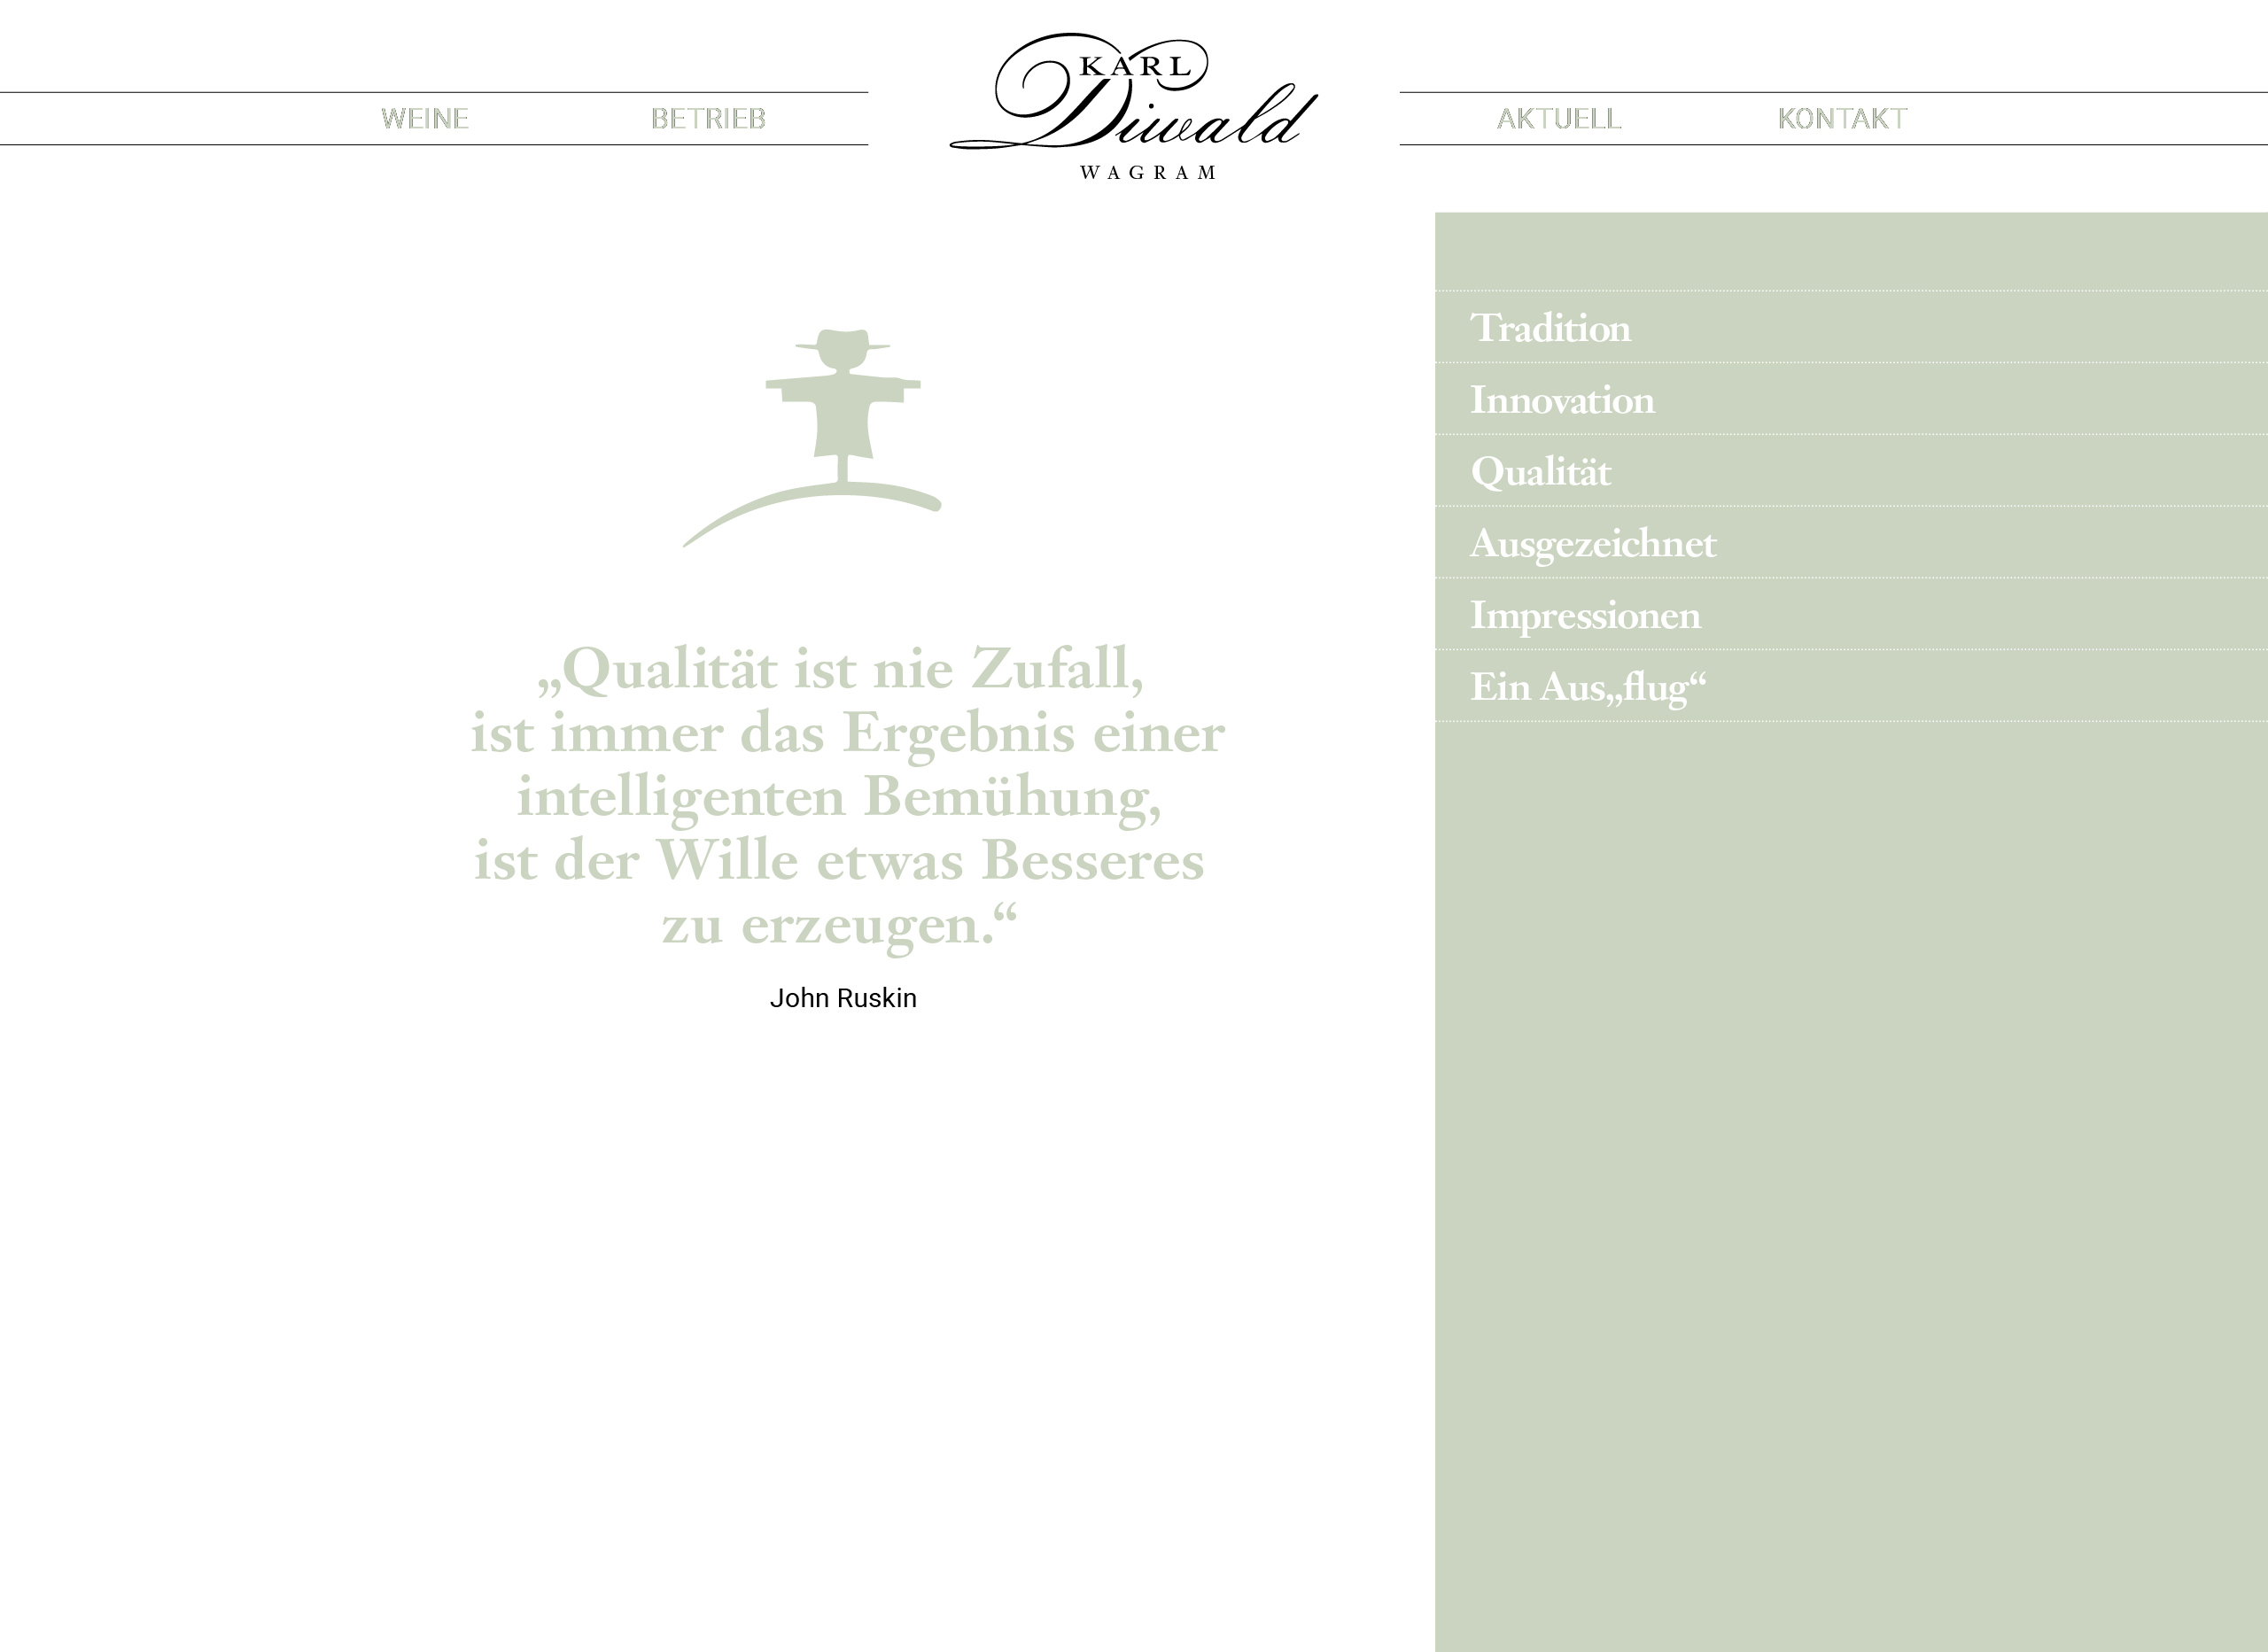 Karl-Diwald-Homepage-END7